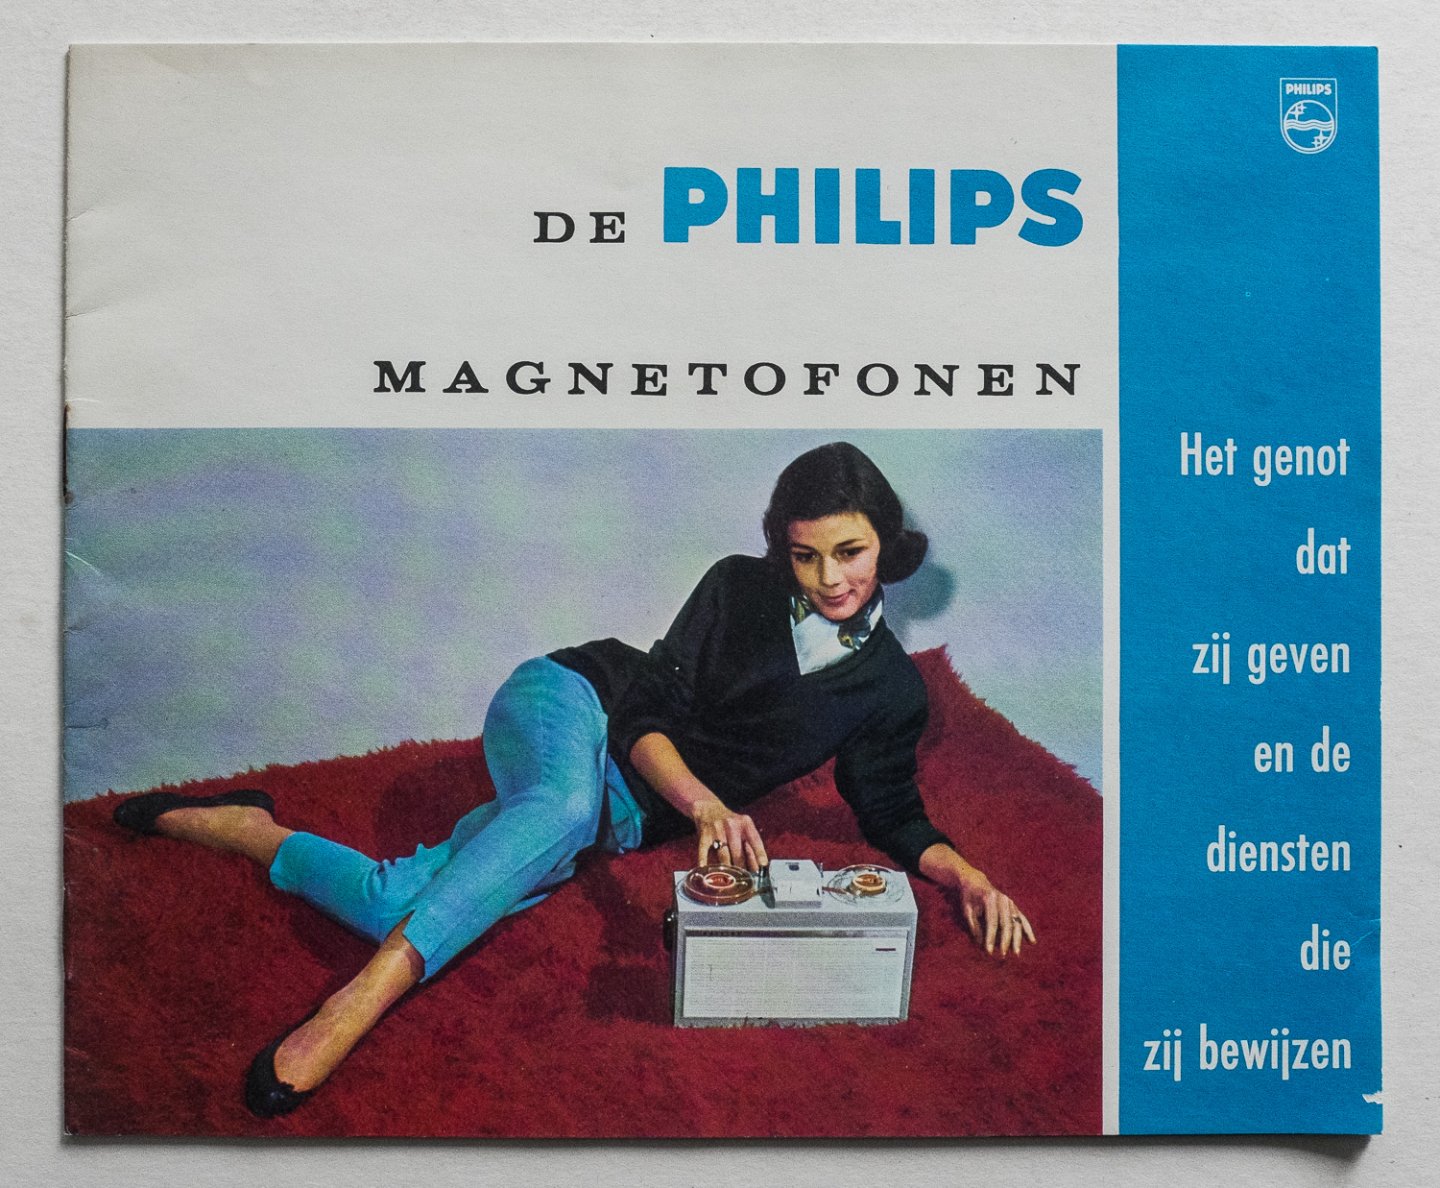 Philips Gloeilampenfabrieken Nederland n.v., Eindhoven - De Philips Magnetofonen